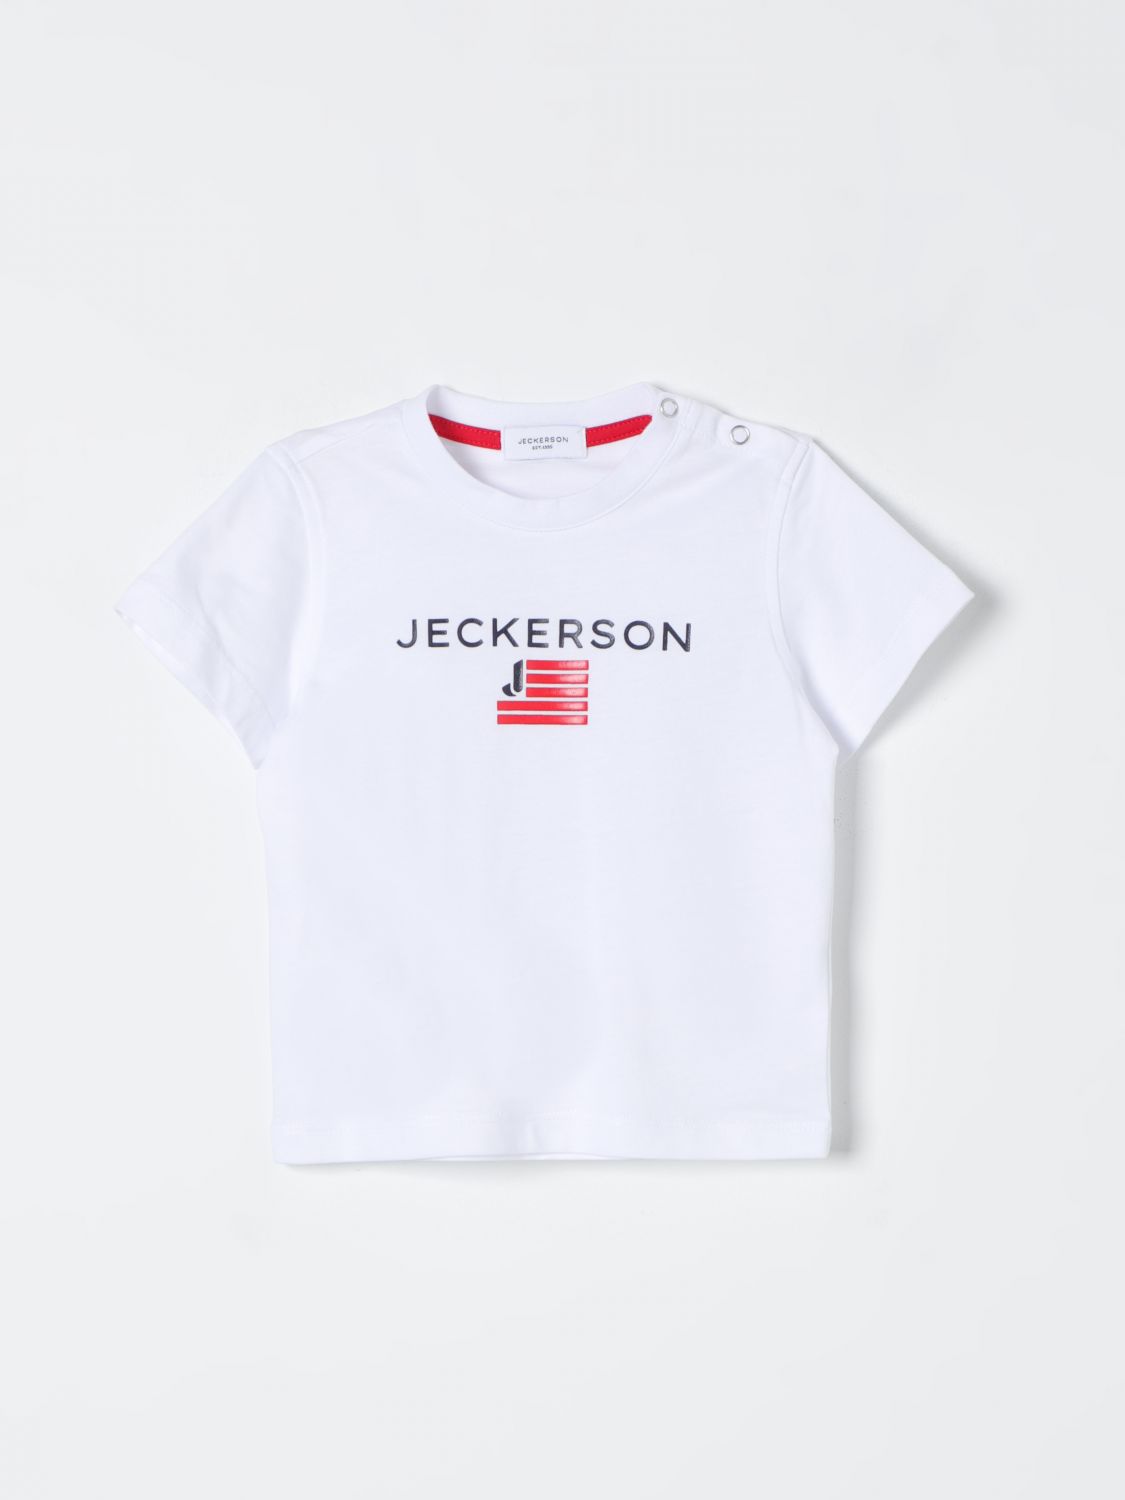 Jeckerson Babies' T-shirt  Kids Color White